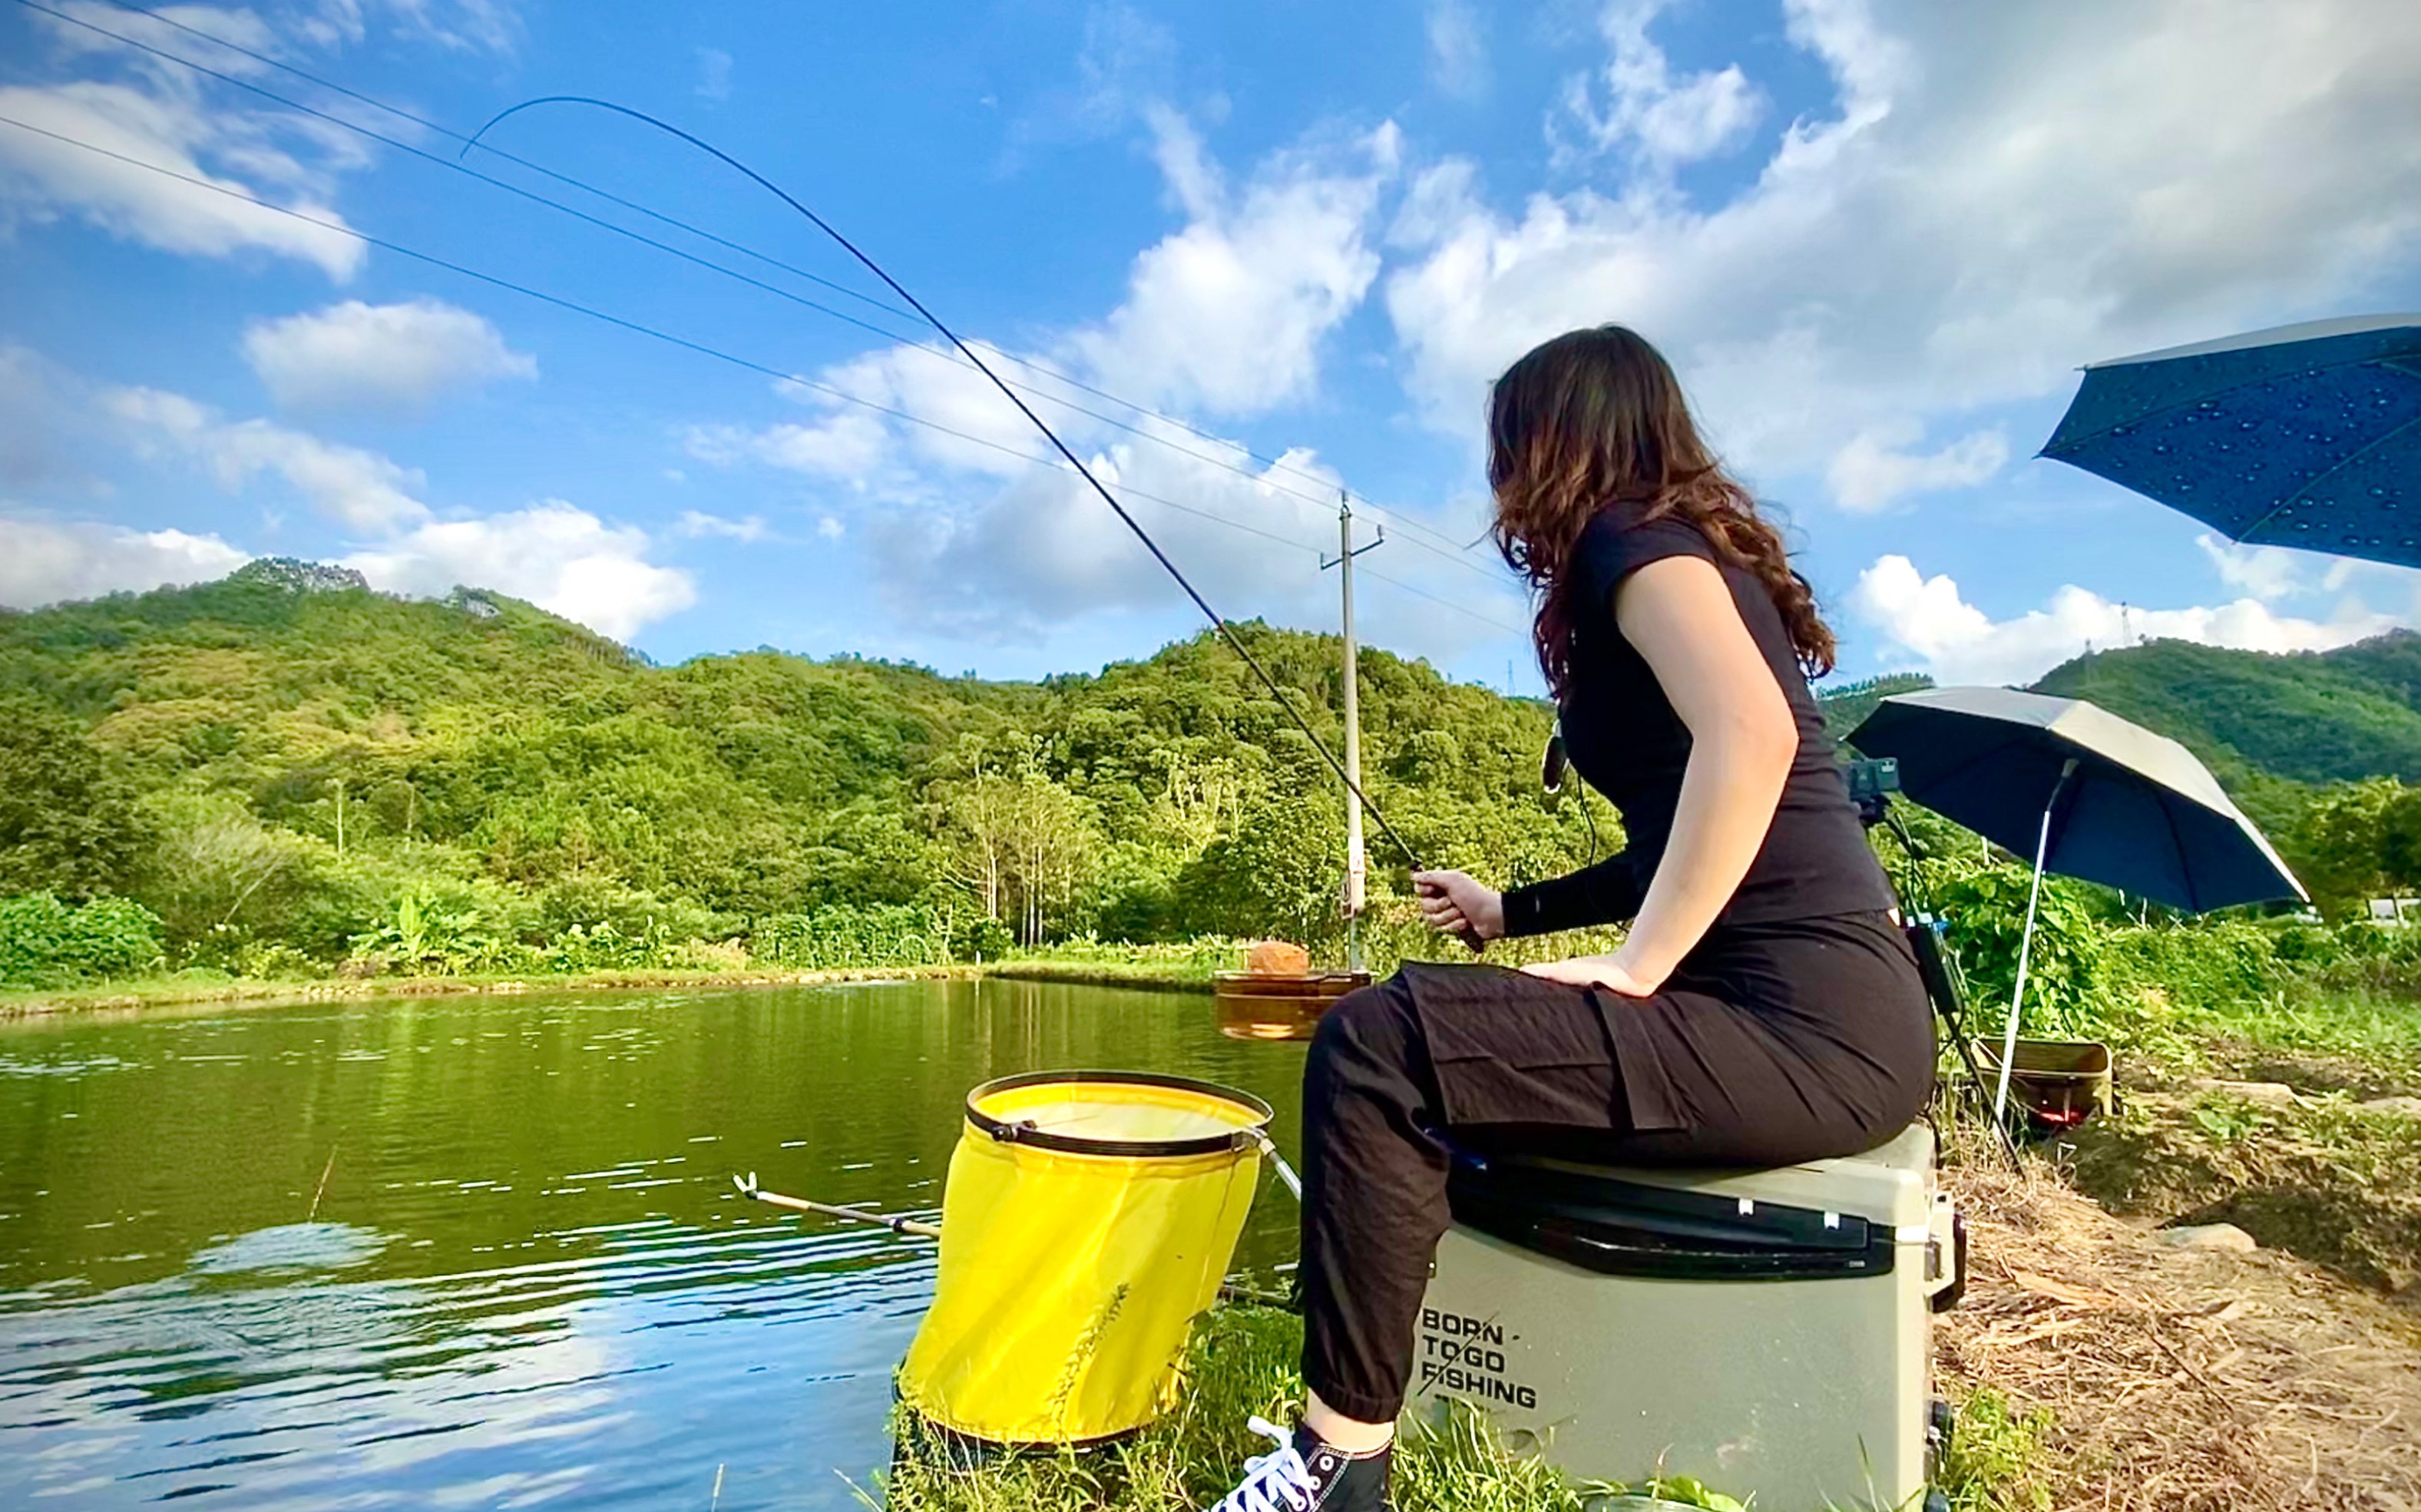 夏日高温天气钓鱼,美女表妹用3米鱼竿,重点还是位置选的好!